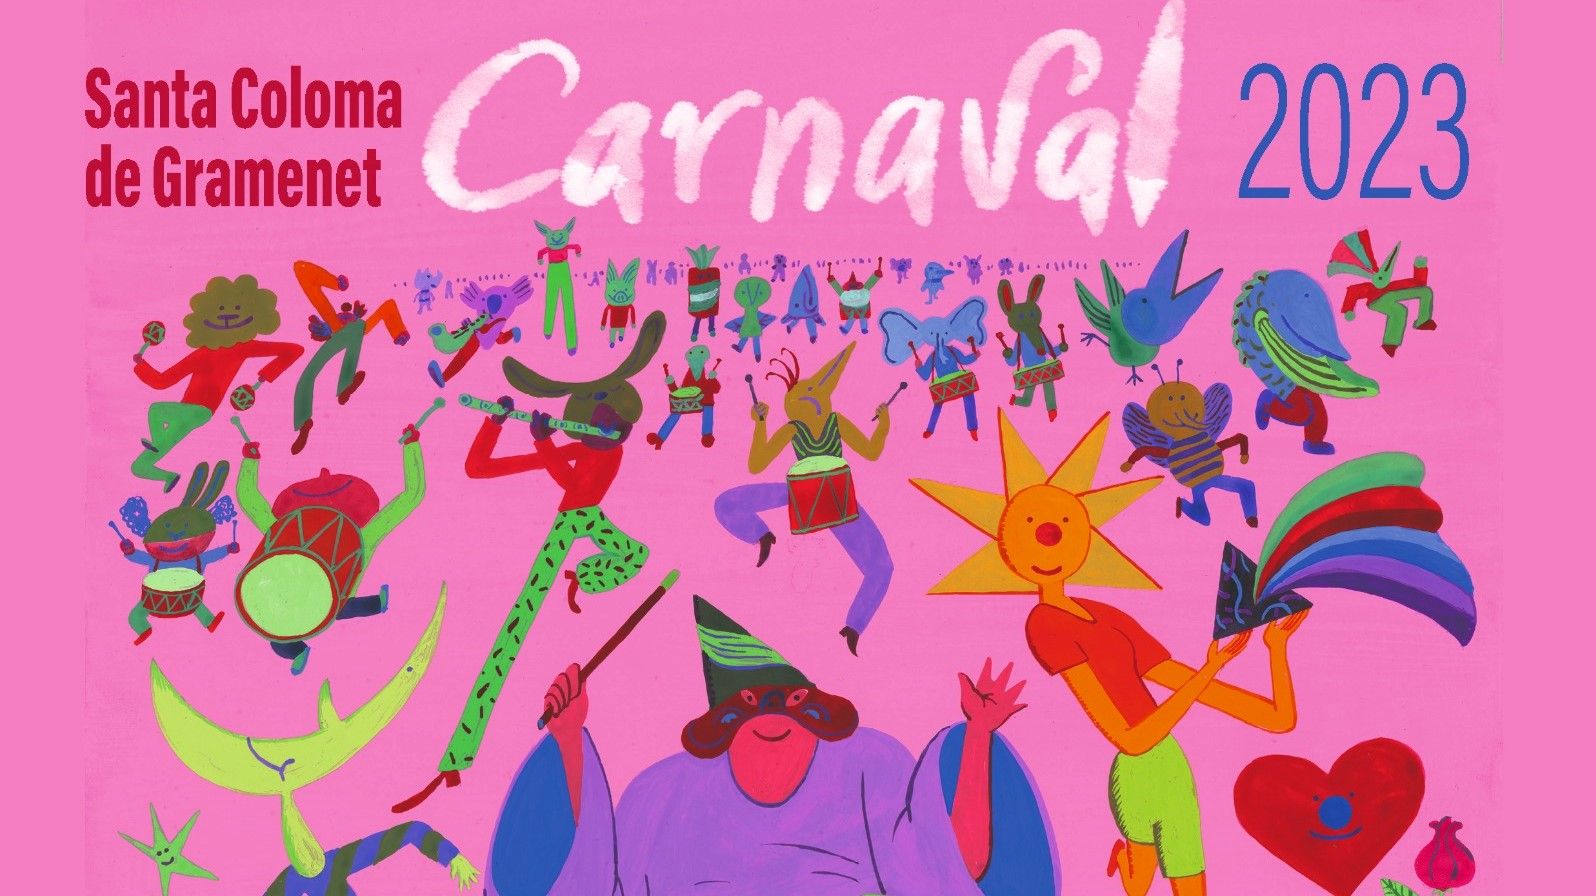 Cartel del Carnaval de Santa Coloma 2023.